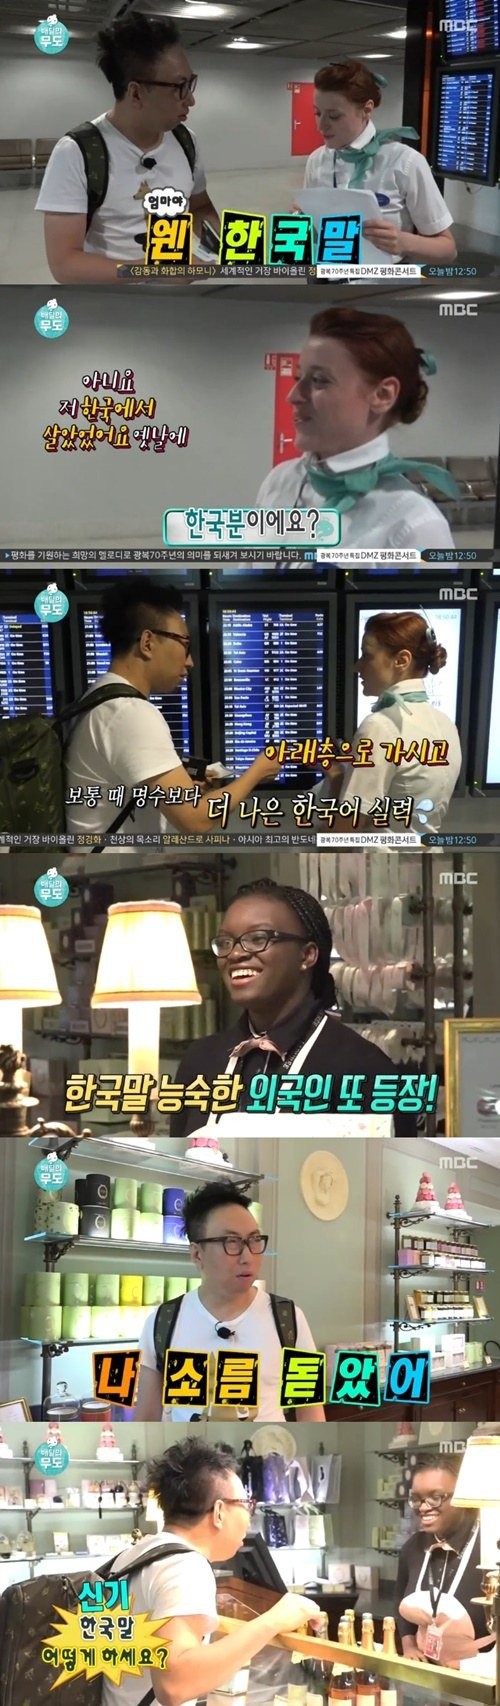 朴明秀语录 《无限挑战》朴明秀被巴黎乘务员和店员流利韩语惊呆!